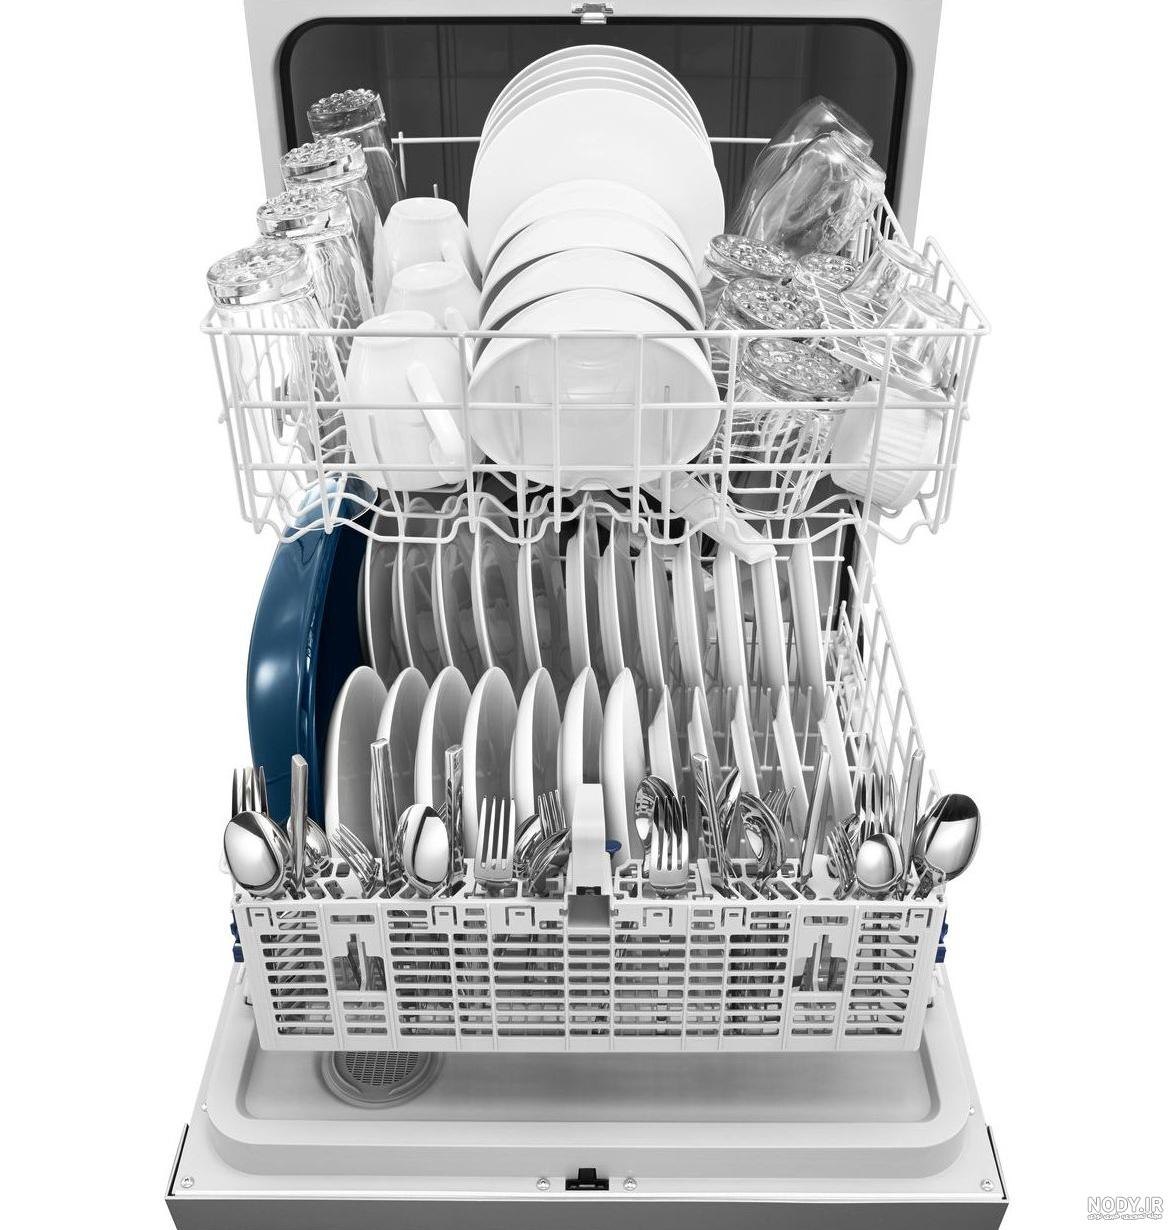 دفترچه راهنمای ماشین ظرفشویی ال جی